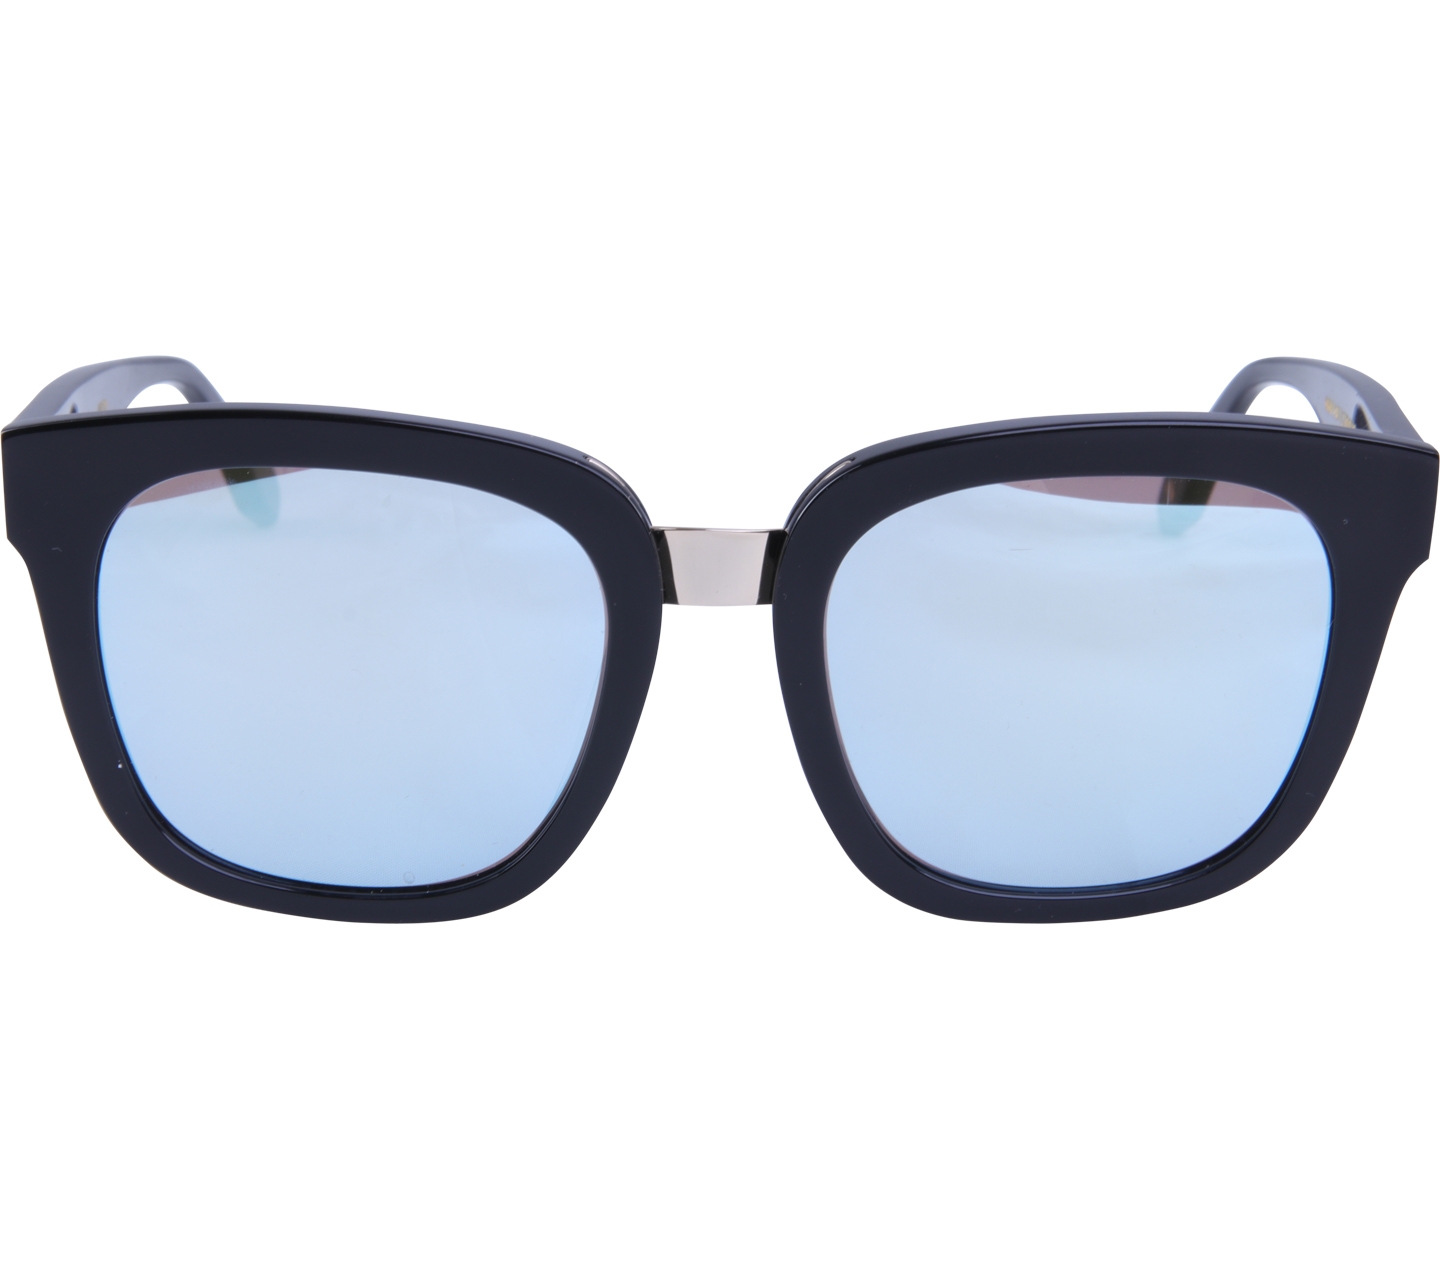 V-Eyewear Black And Blue Sunglasses